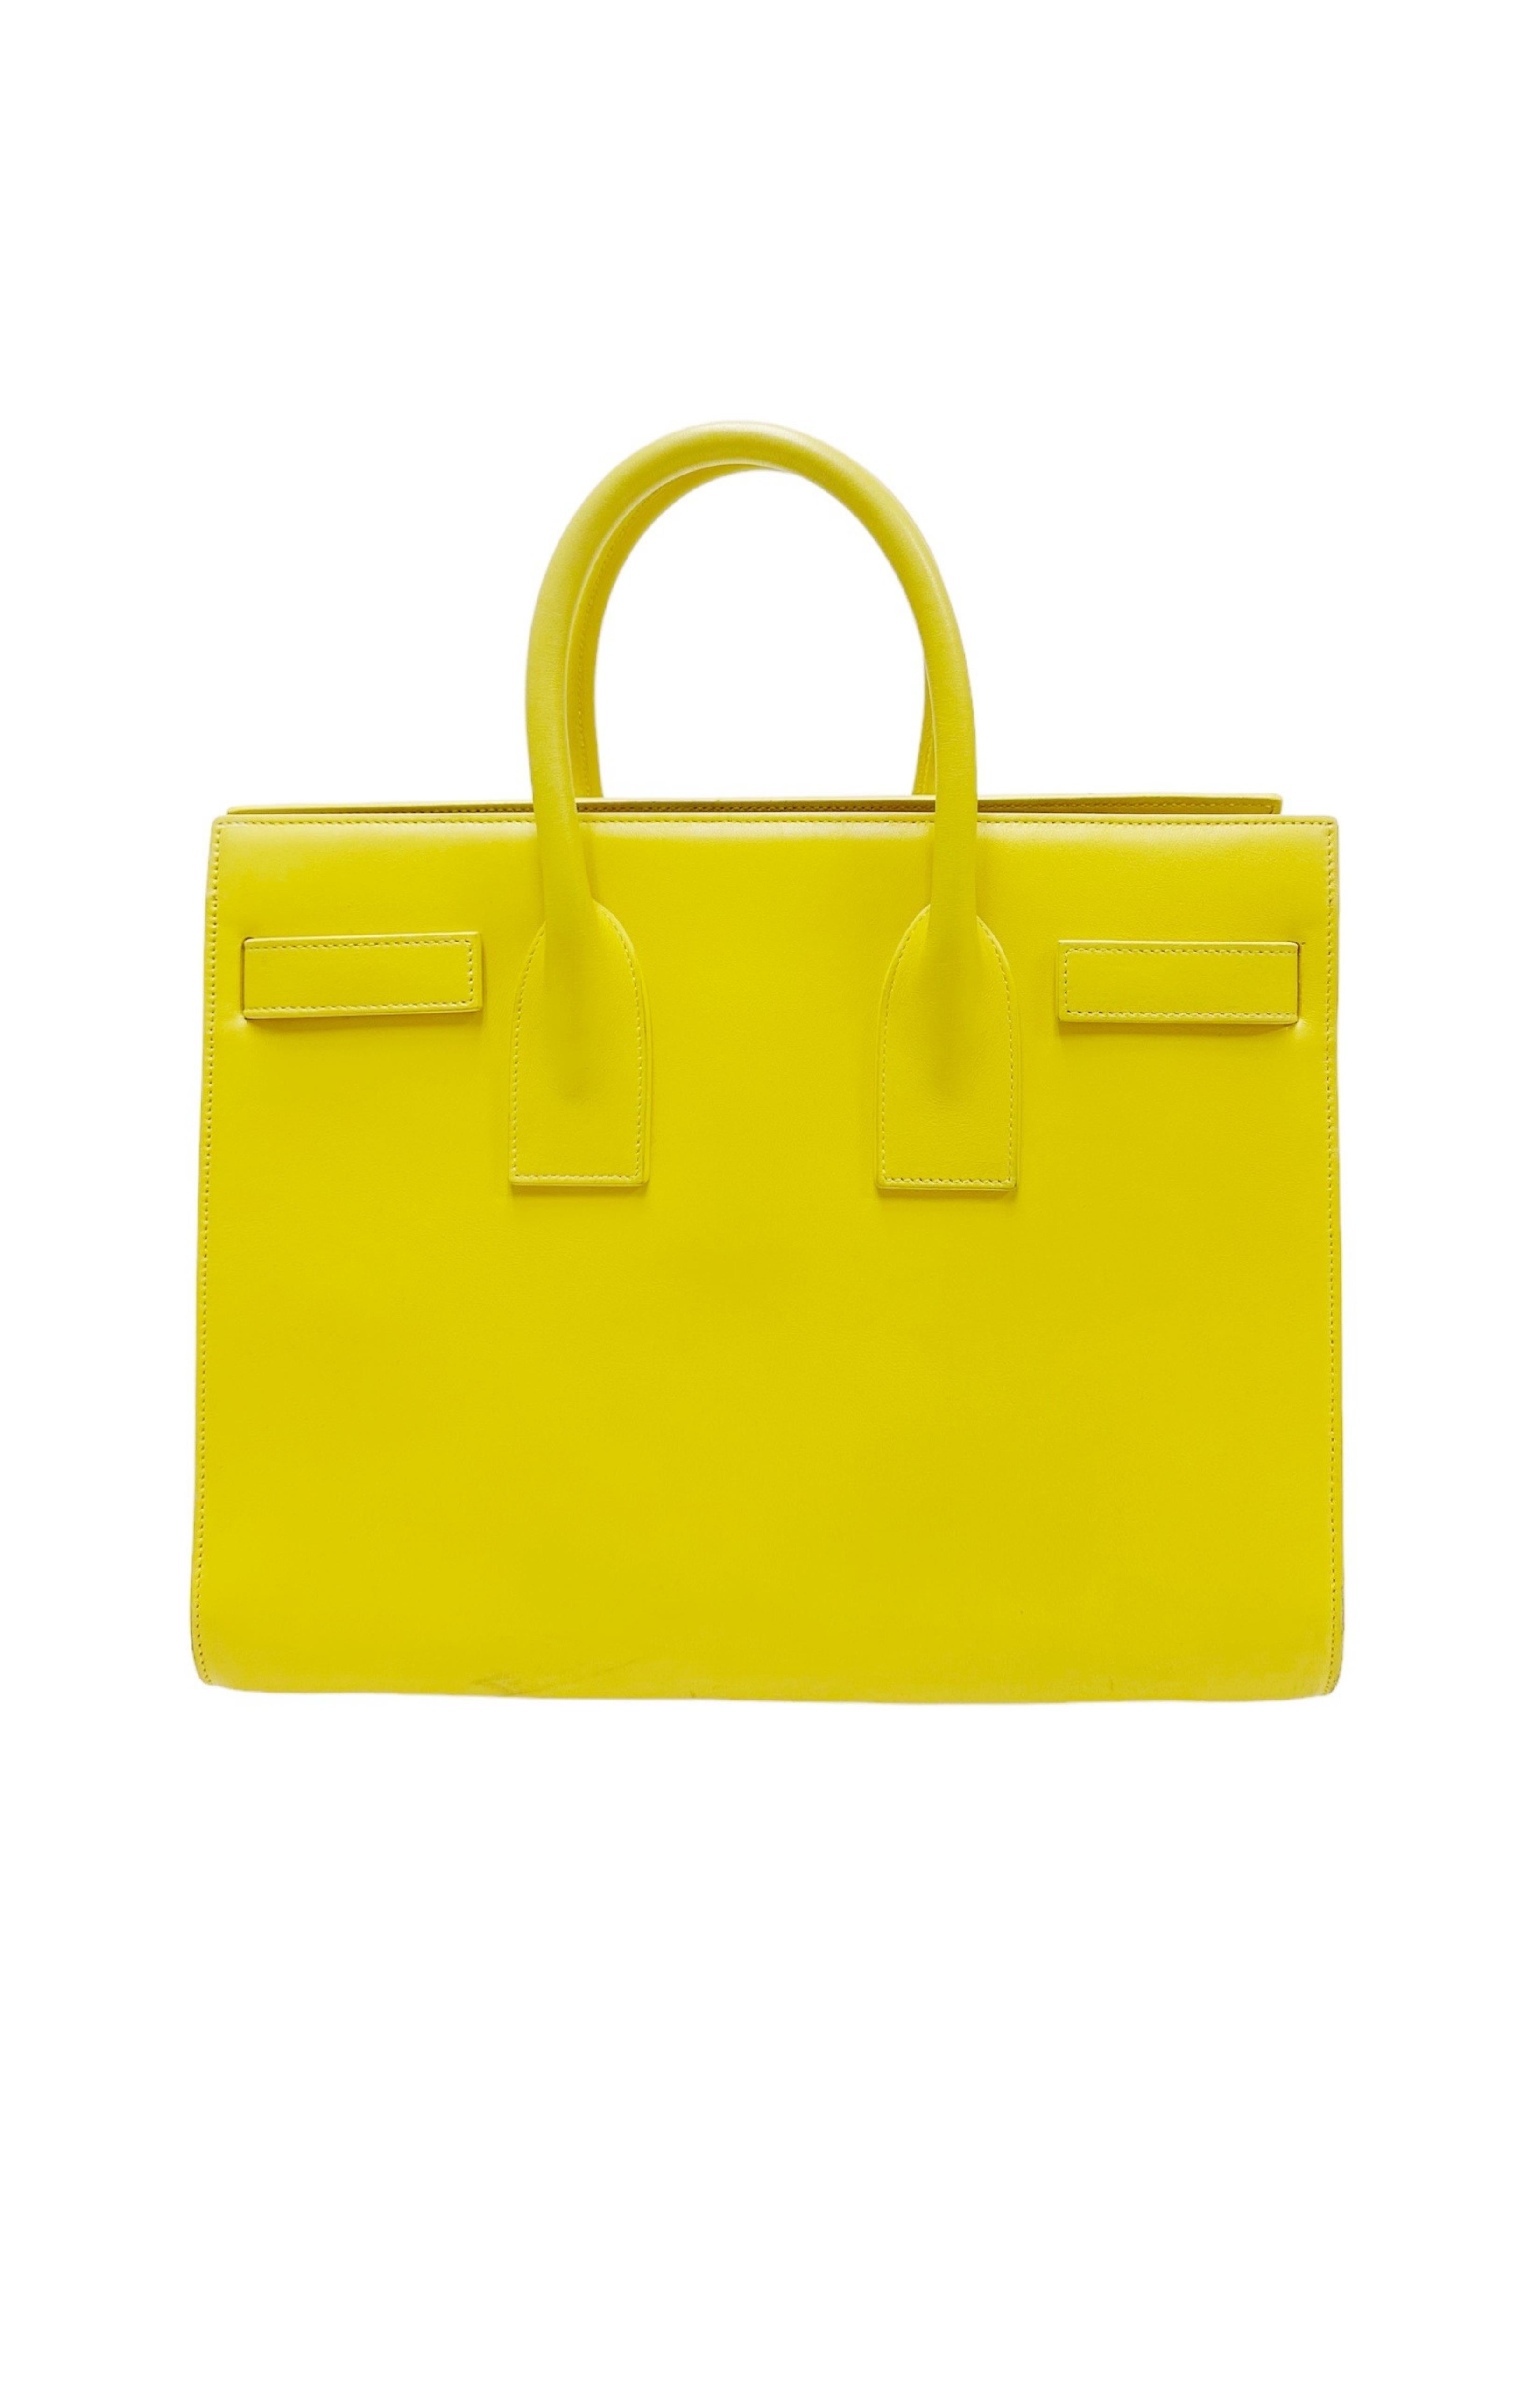 SAINT LAURENT Bag Size: 12.5" x 5.825" x 9.825"; 3.75" drop handle